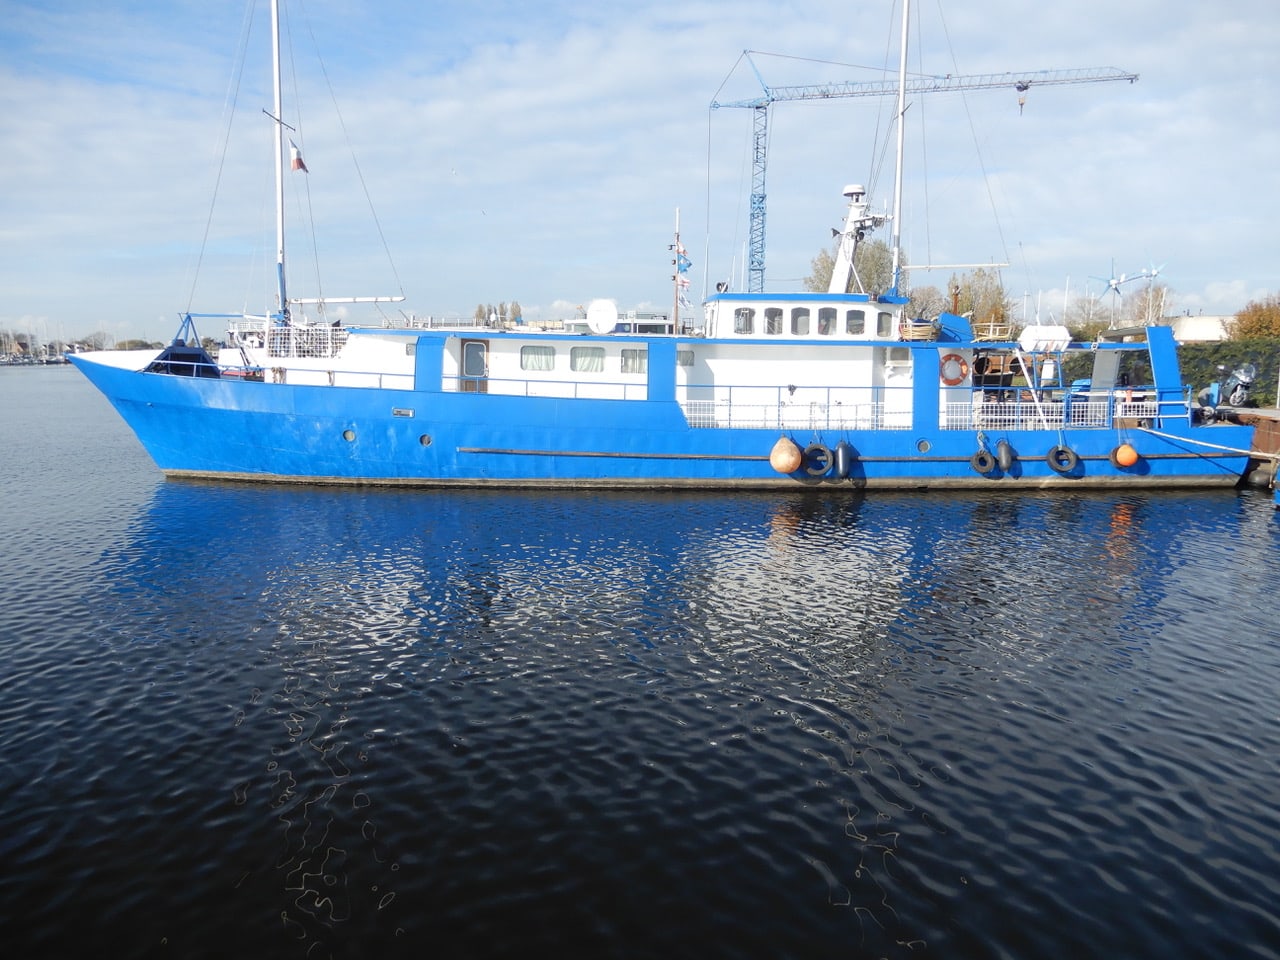 prioriteit Autonoom Doodskaak Zweedse ex-torpedojager te koop op online veiling - BootAanBoot.nl